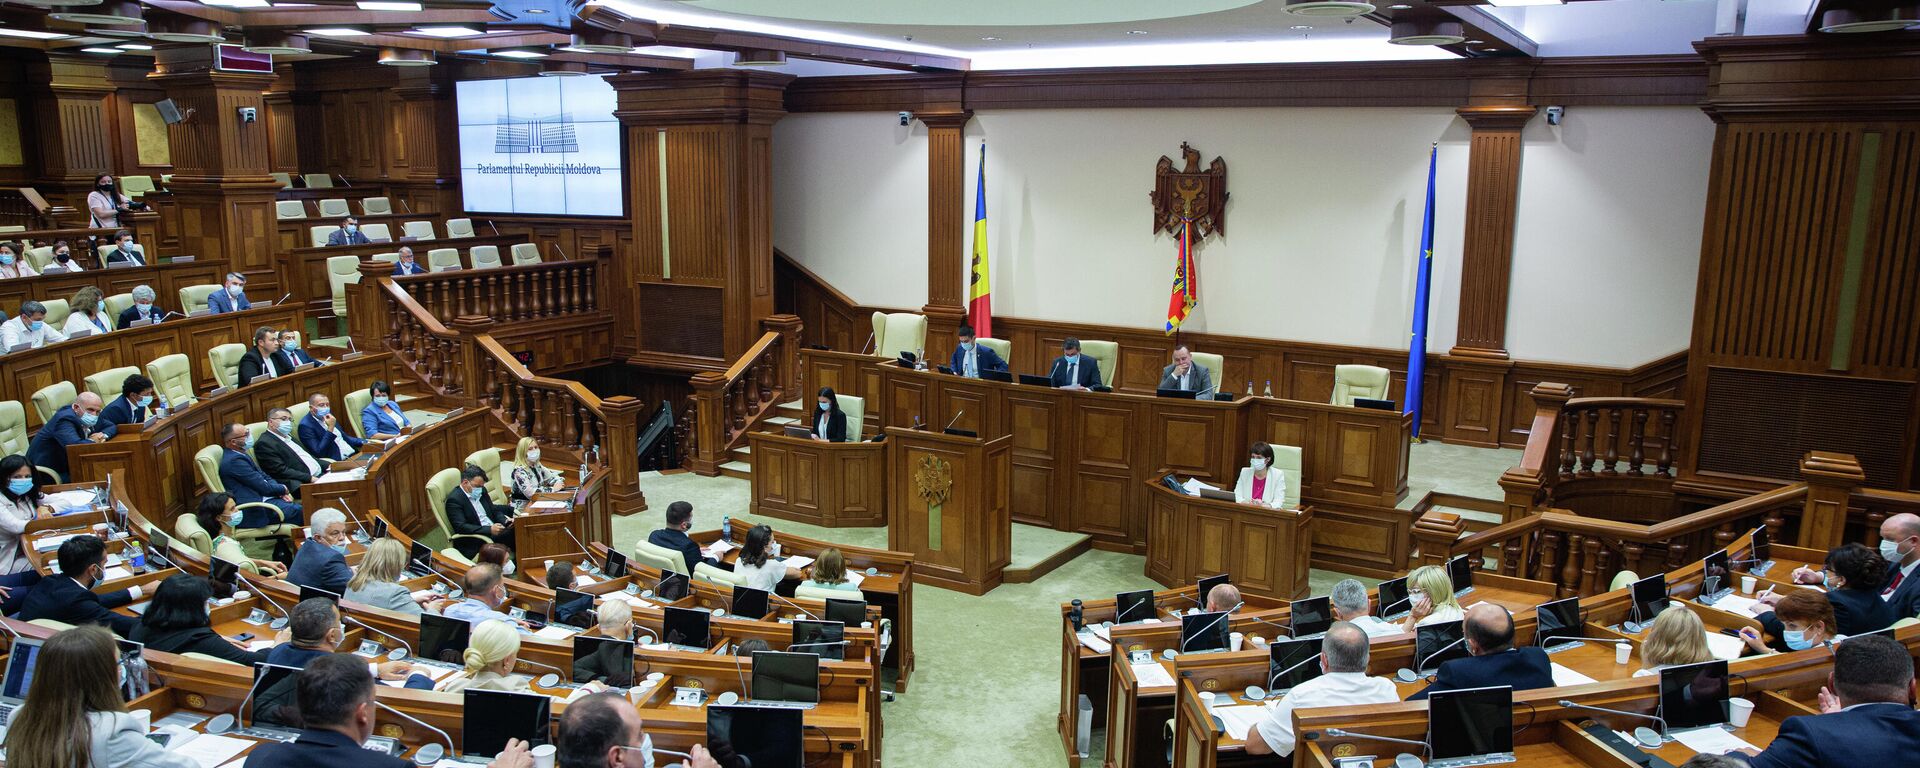 Deputați în Parlamentul Republicii Moldova  - Sputnik Moldova, 1920, 24.12.2021